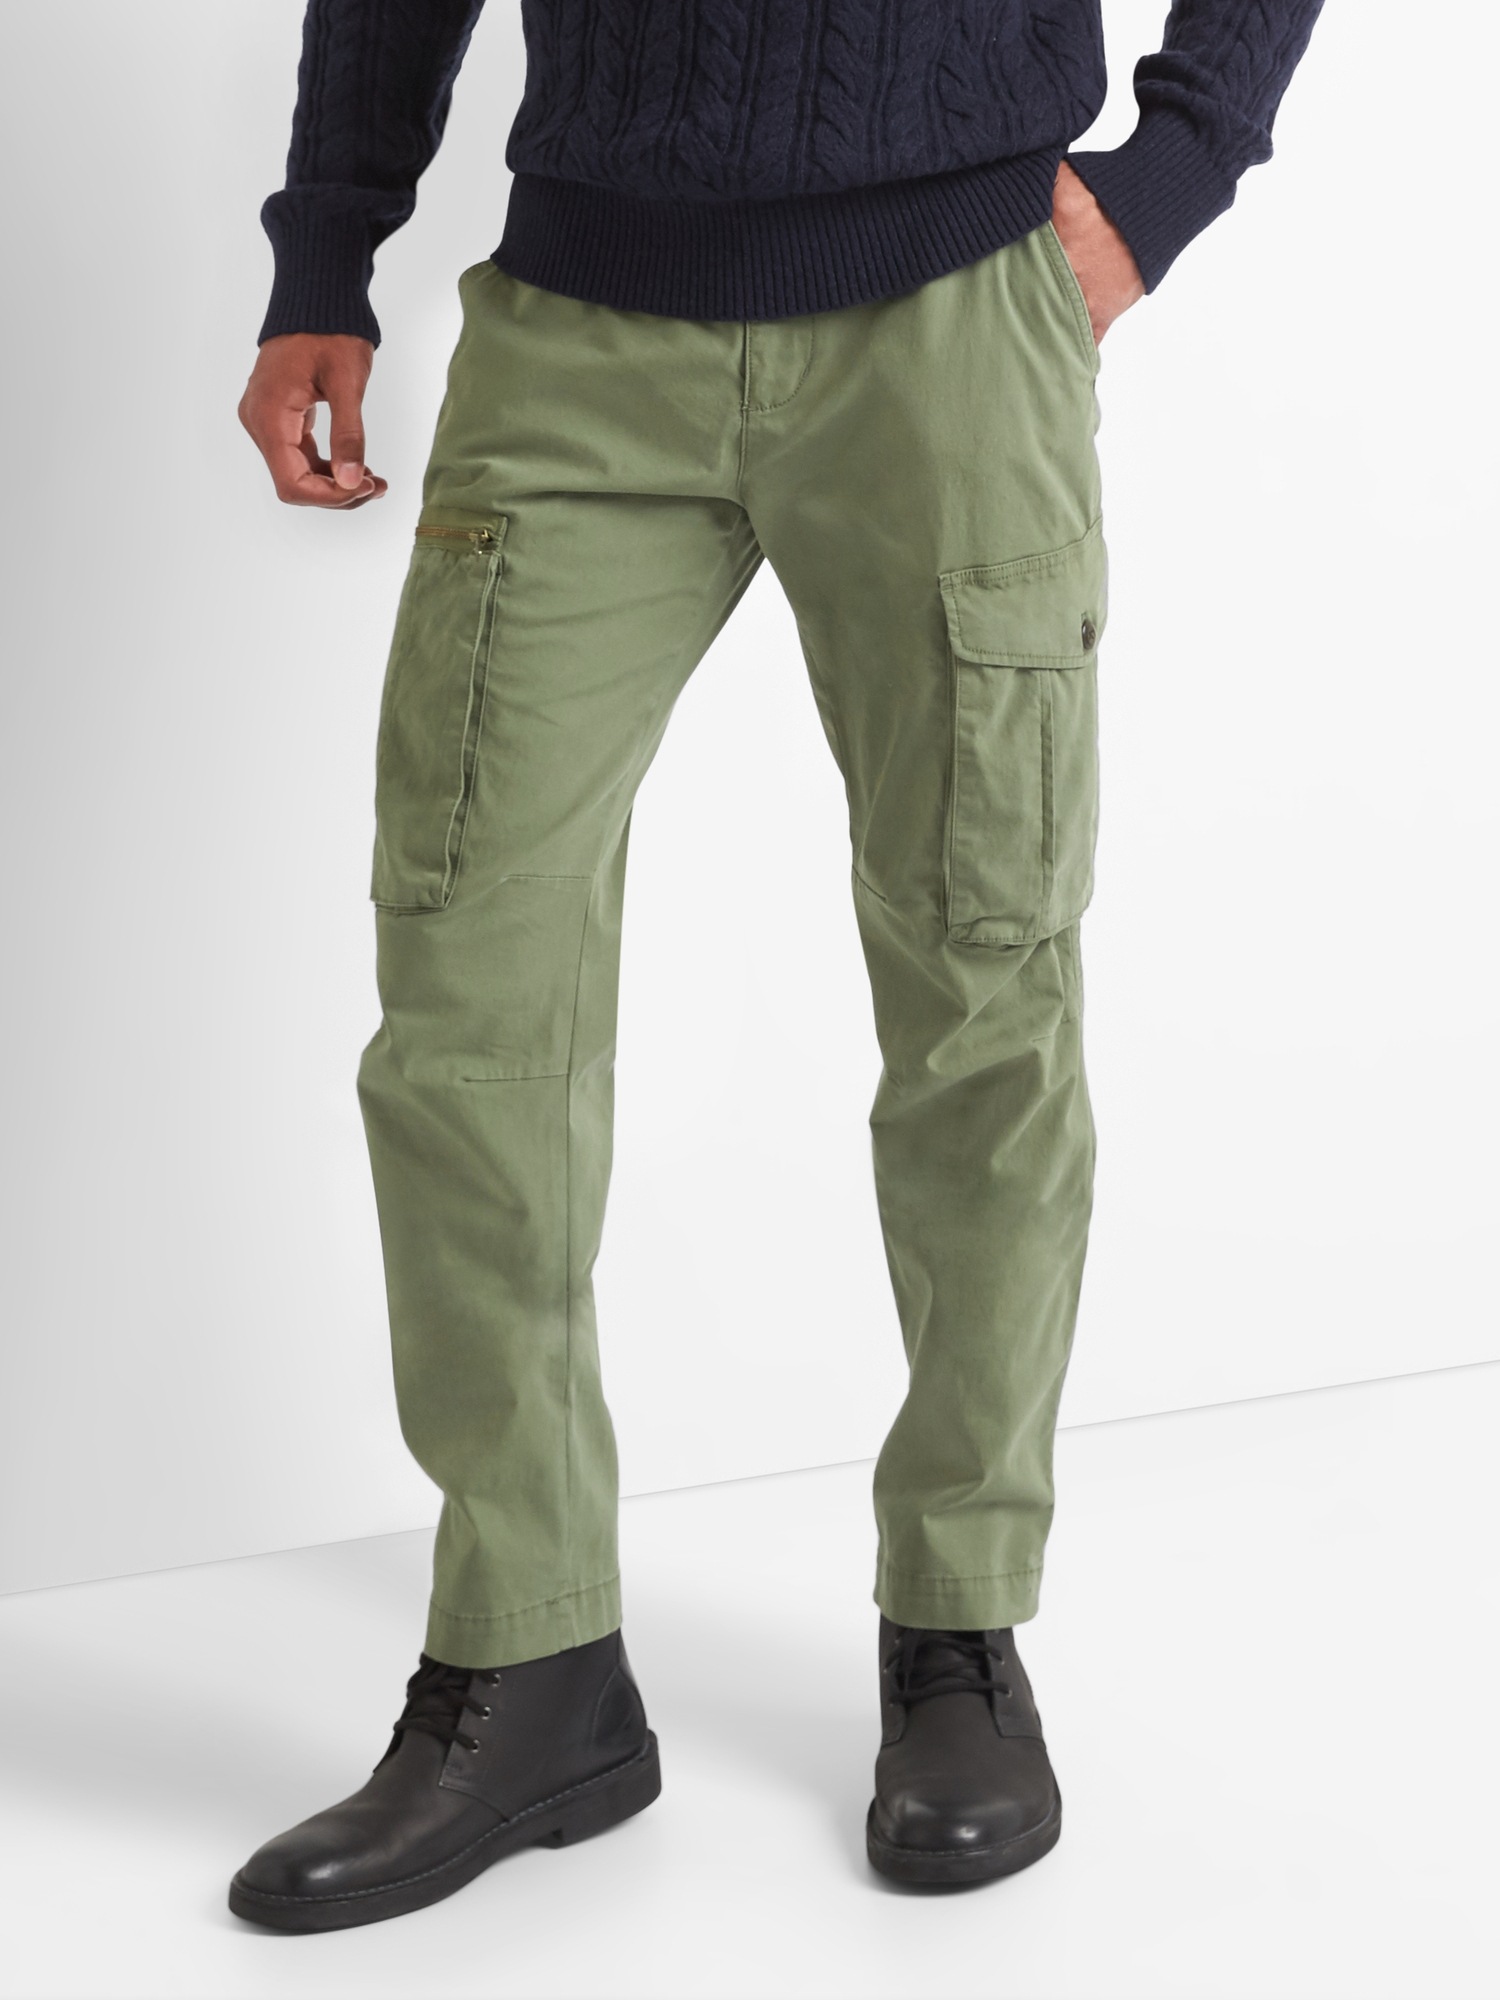 Hybrid Pants in Slim Fit | Gap